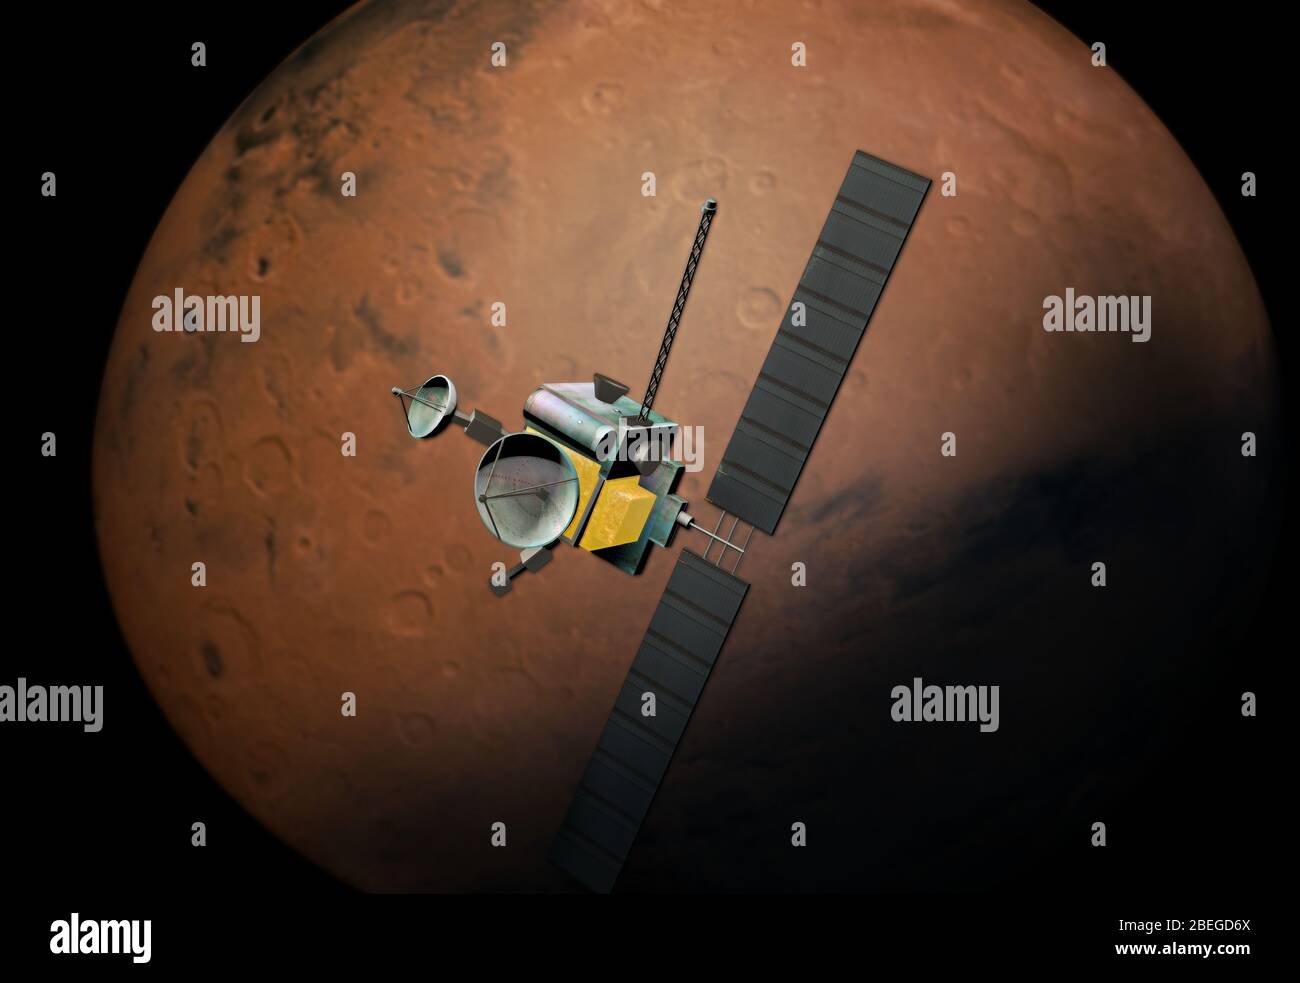 Mars Probe, Illustration Stock Photo